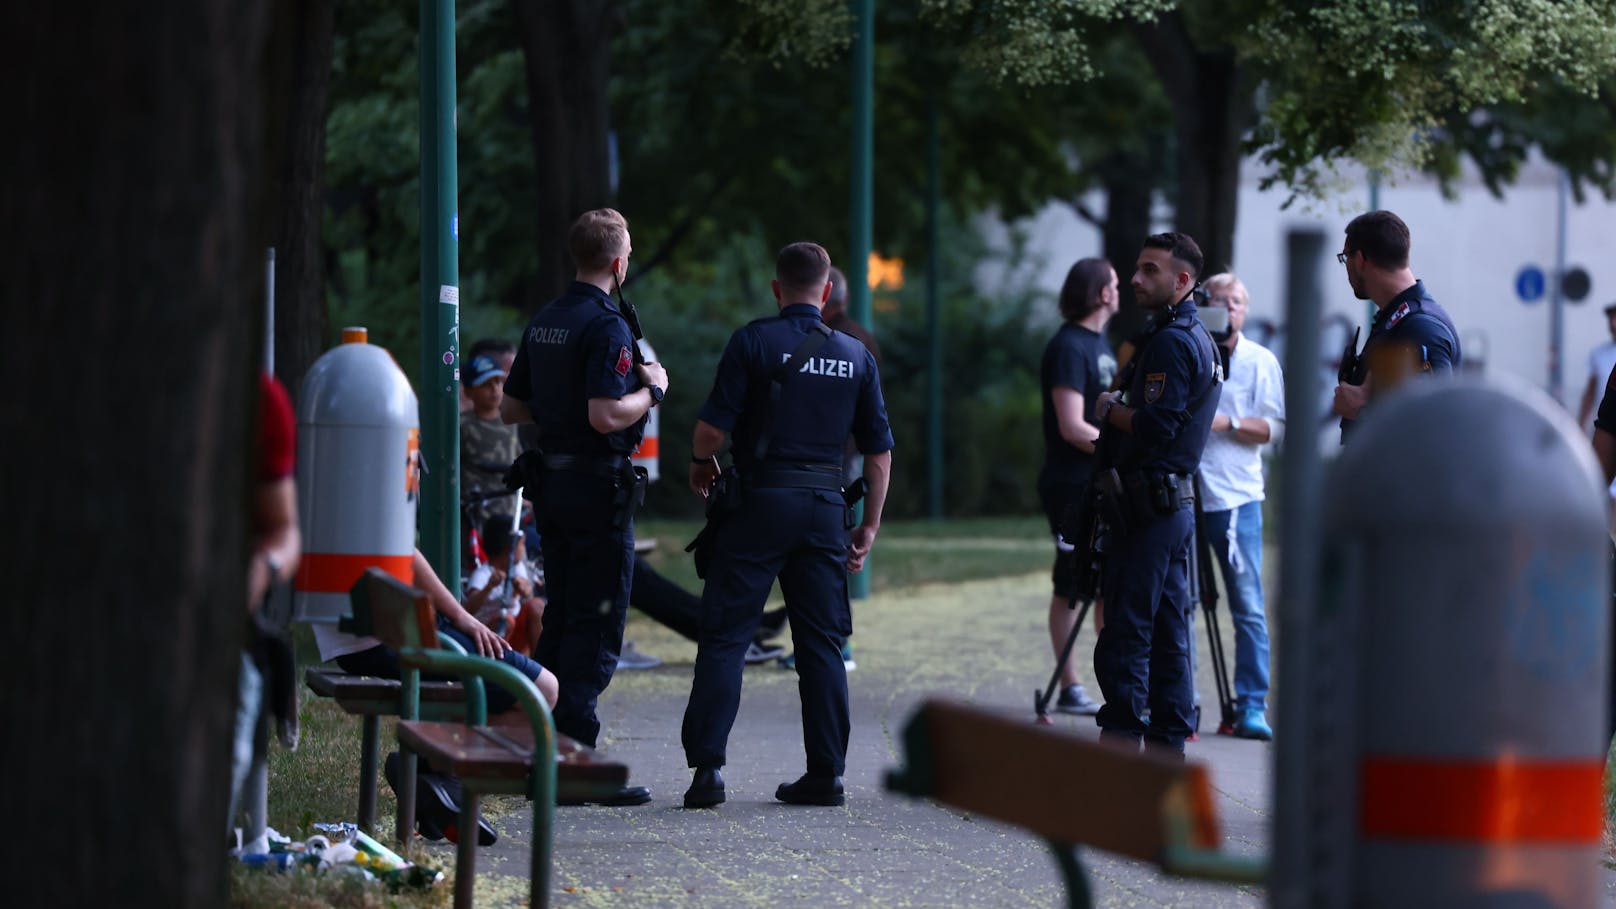 Bandenstreit in Wien: Opfer mit Schädelbruch im Spital